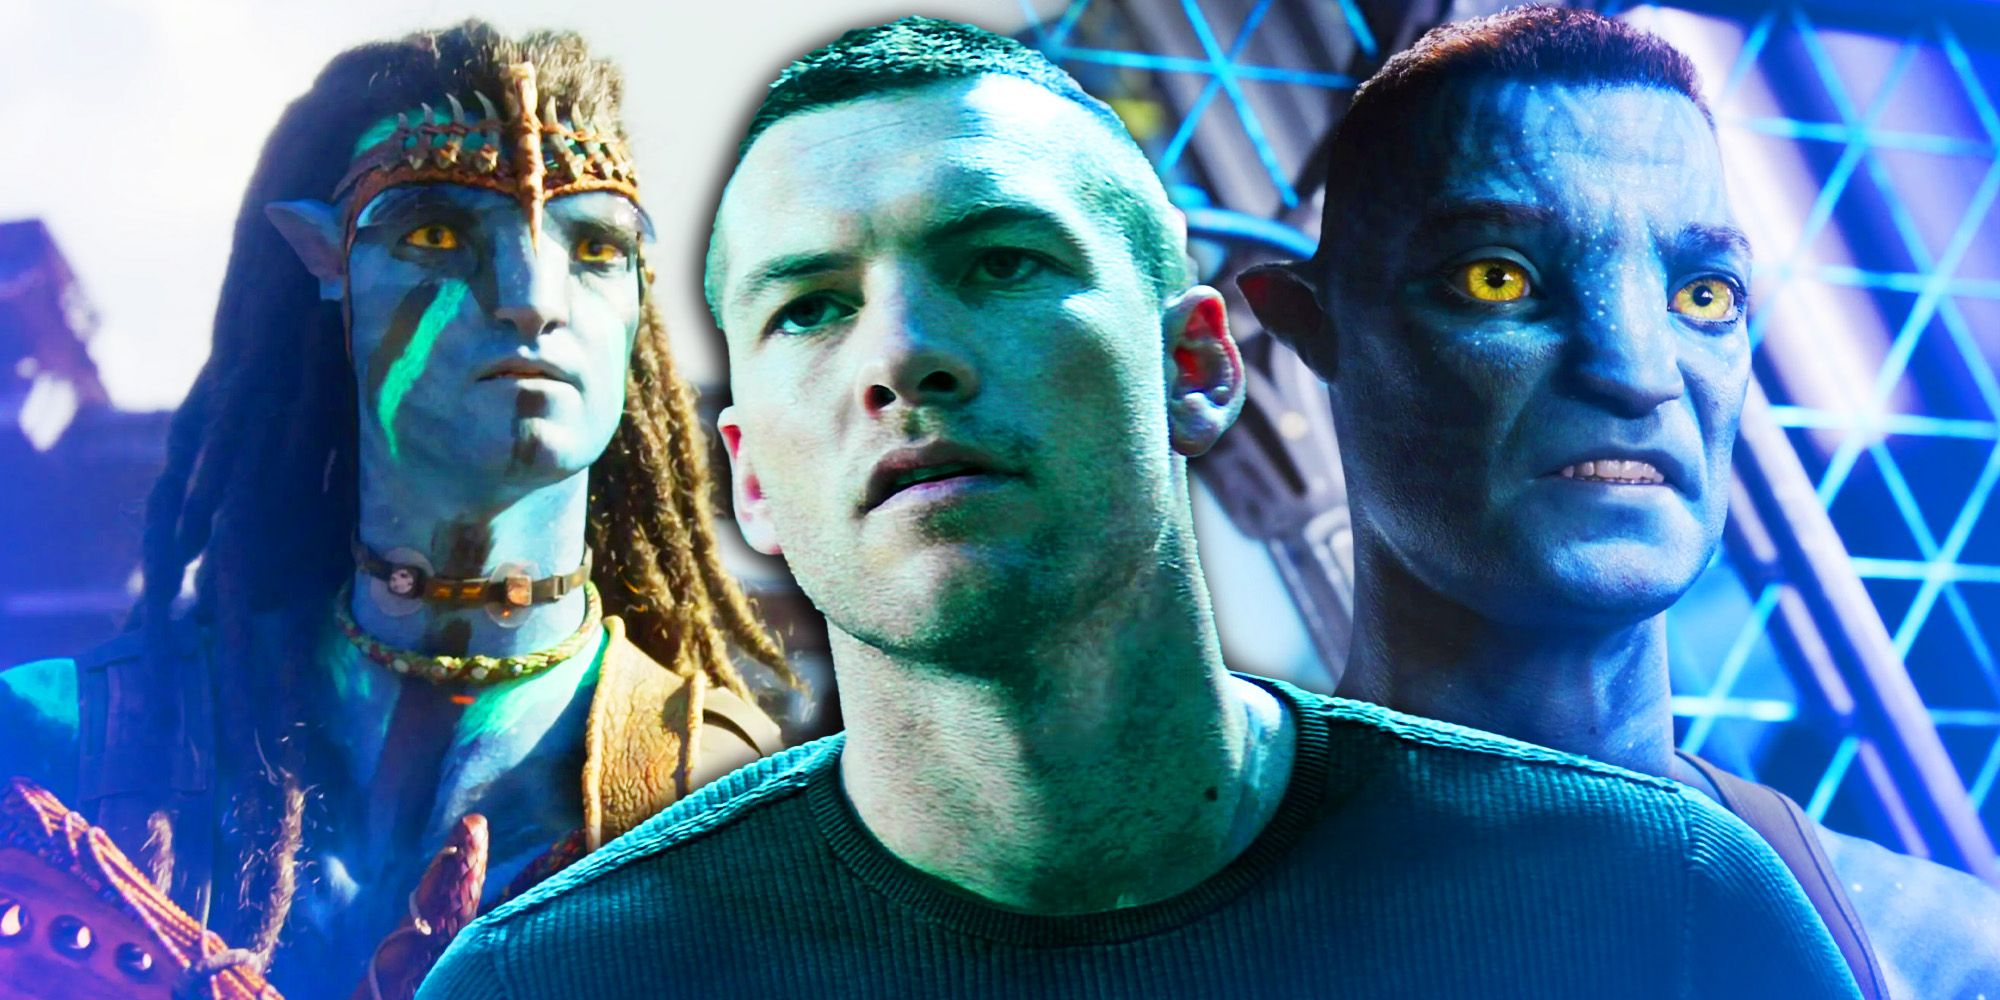 El villano de Avatar 4 y 5 fue mencionado en secreto en la primera película: teoría explicada